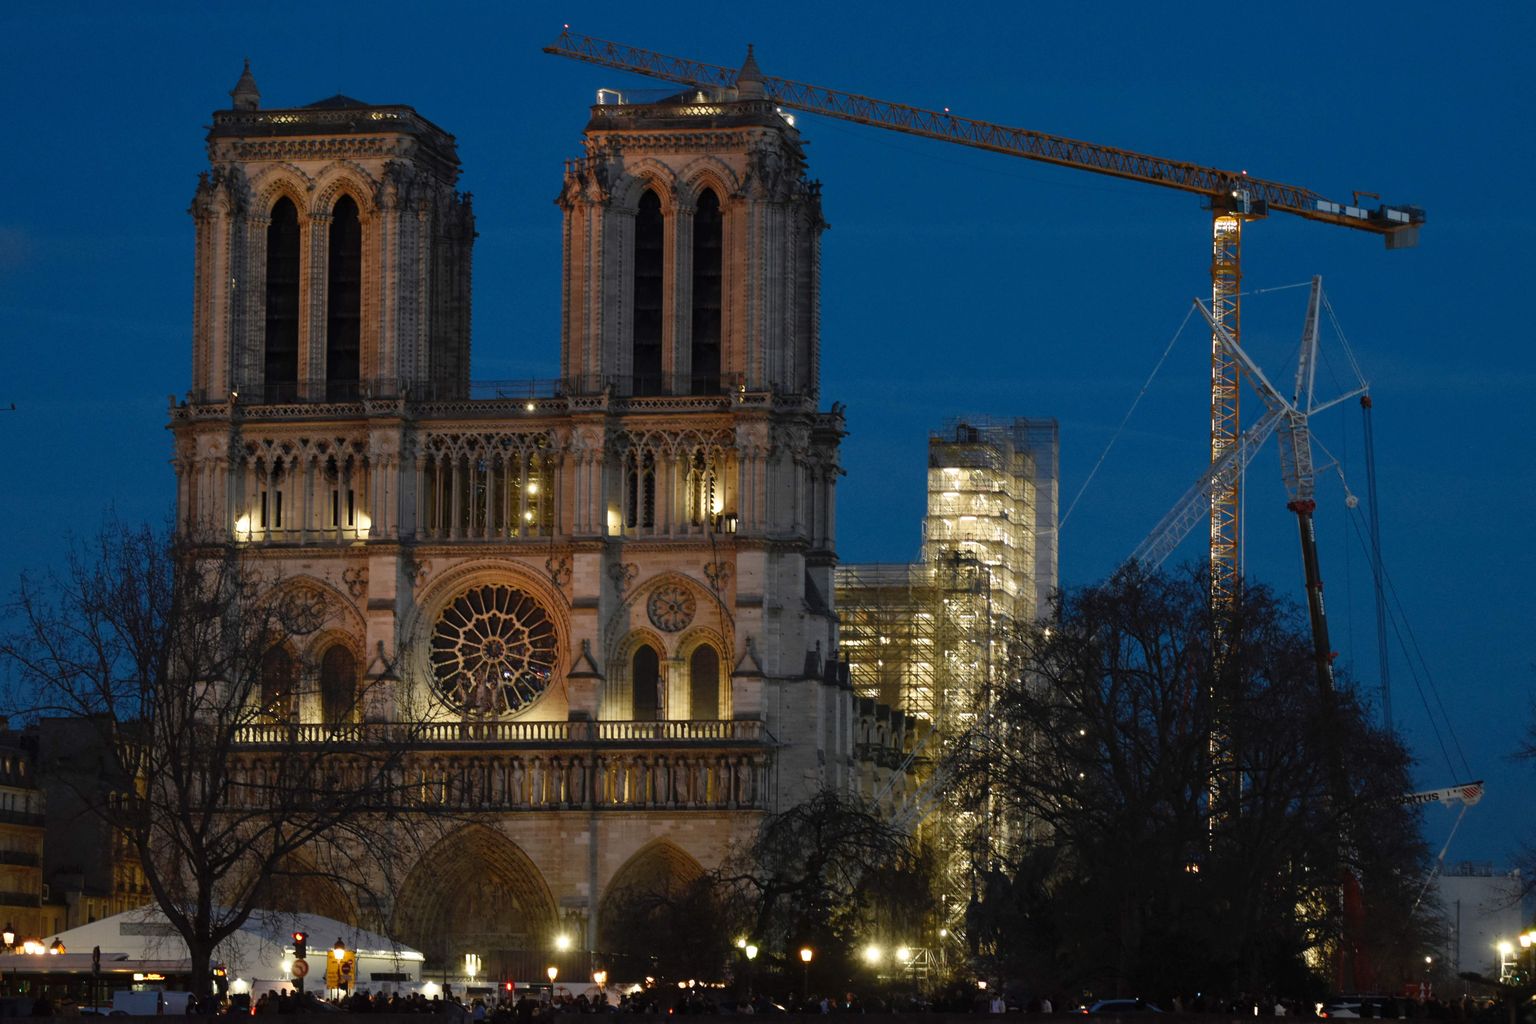 2019. aprillis põlenud Pariisi Jumalaema kirkus kestab praegu taastamine. Kiriku torn ehitatakse üles endisel kujul.